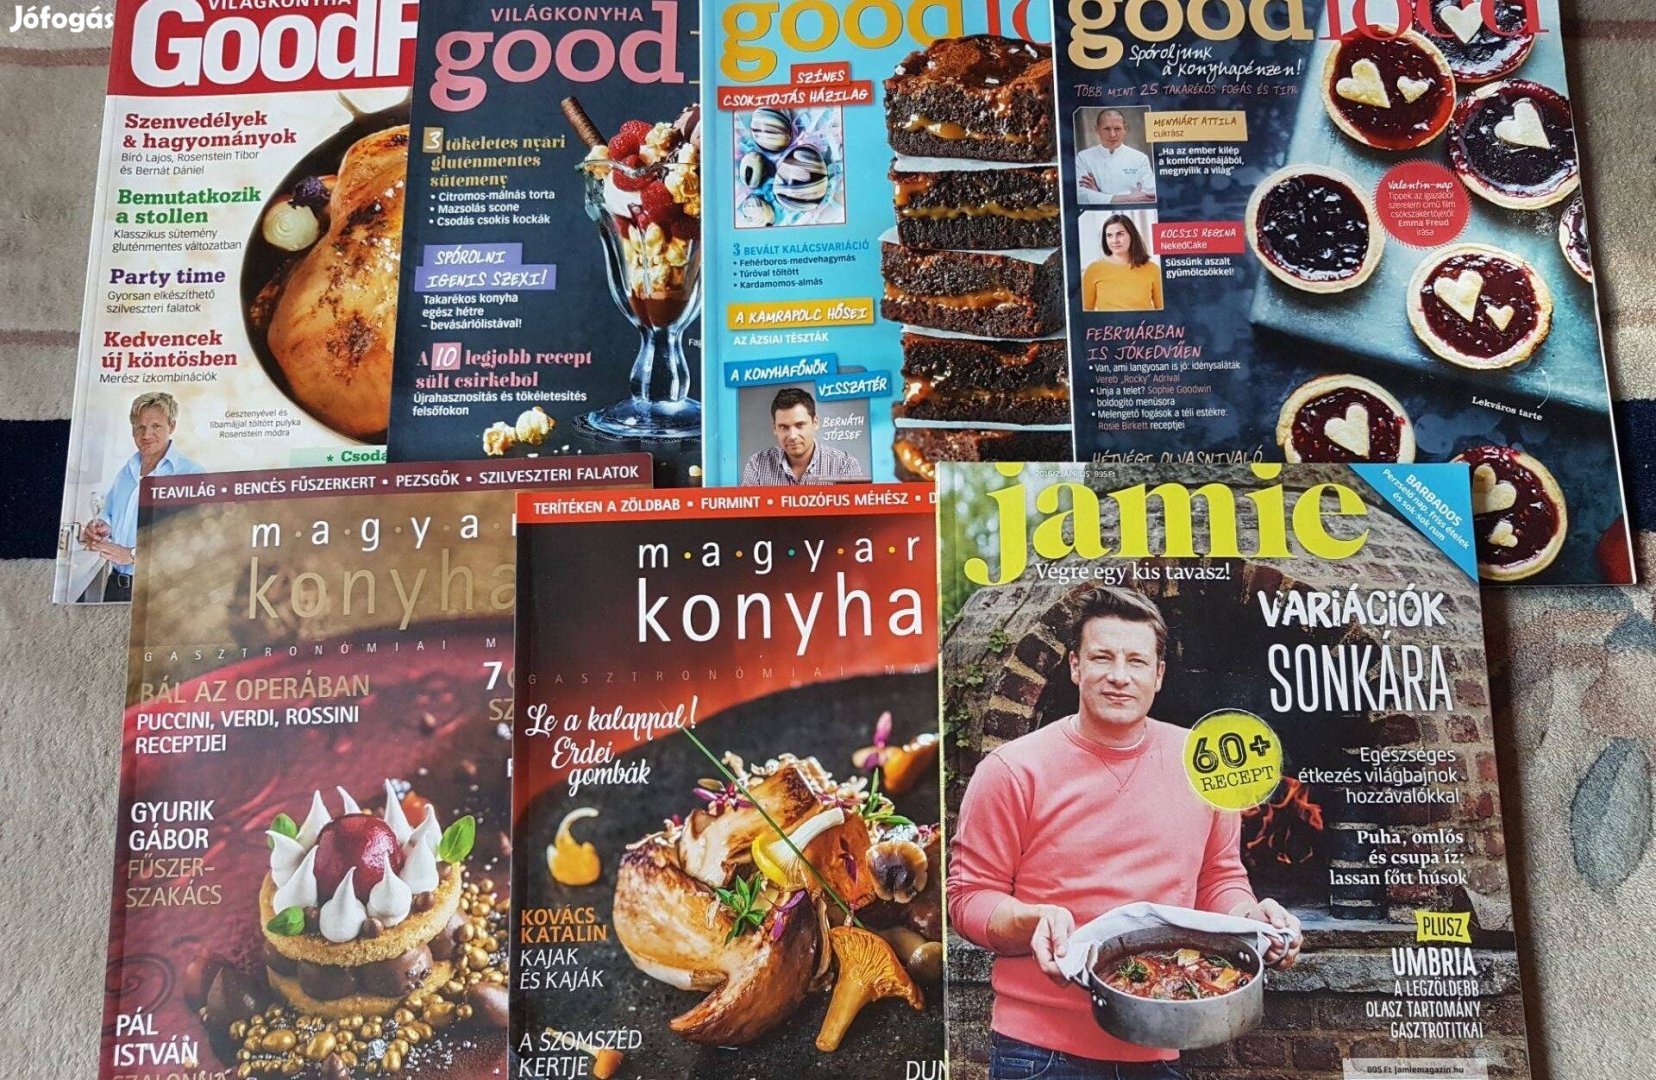 BBC Világkonyha Good Food Magyar Konyha és Jamie gasztronómiai magazin